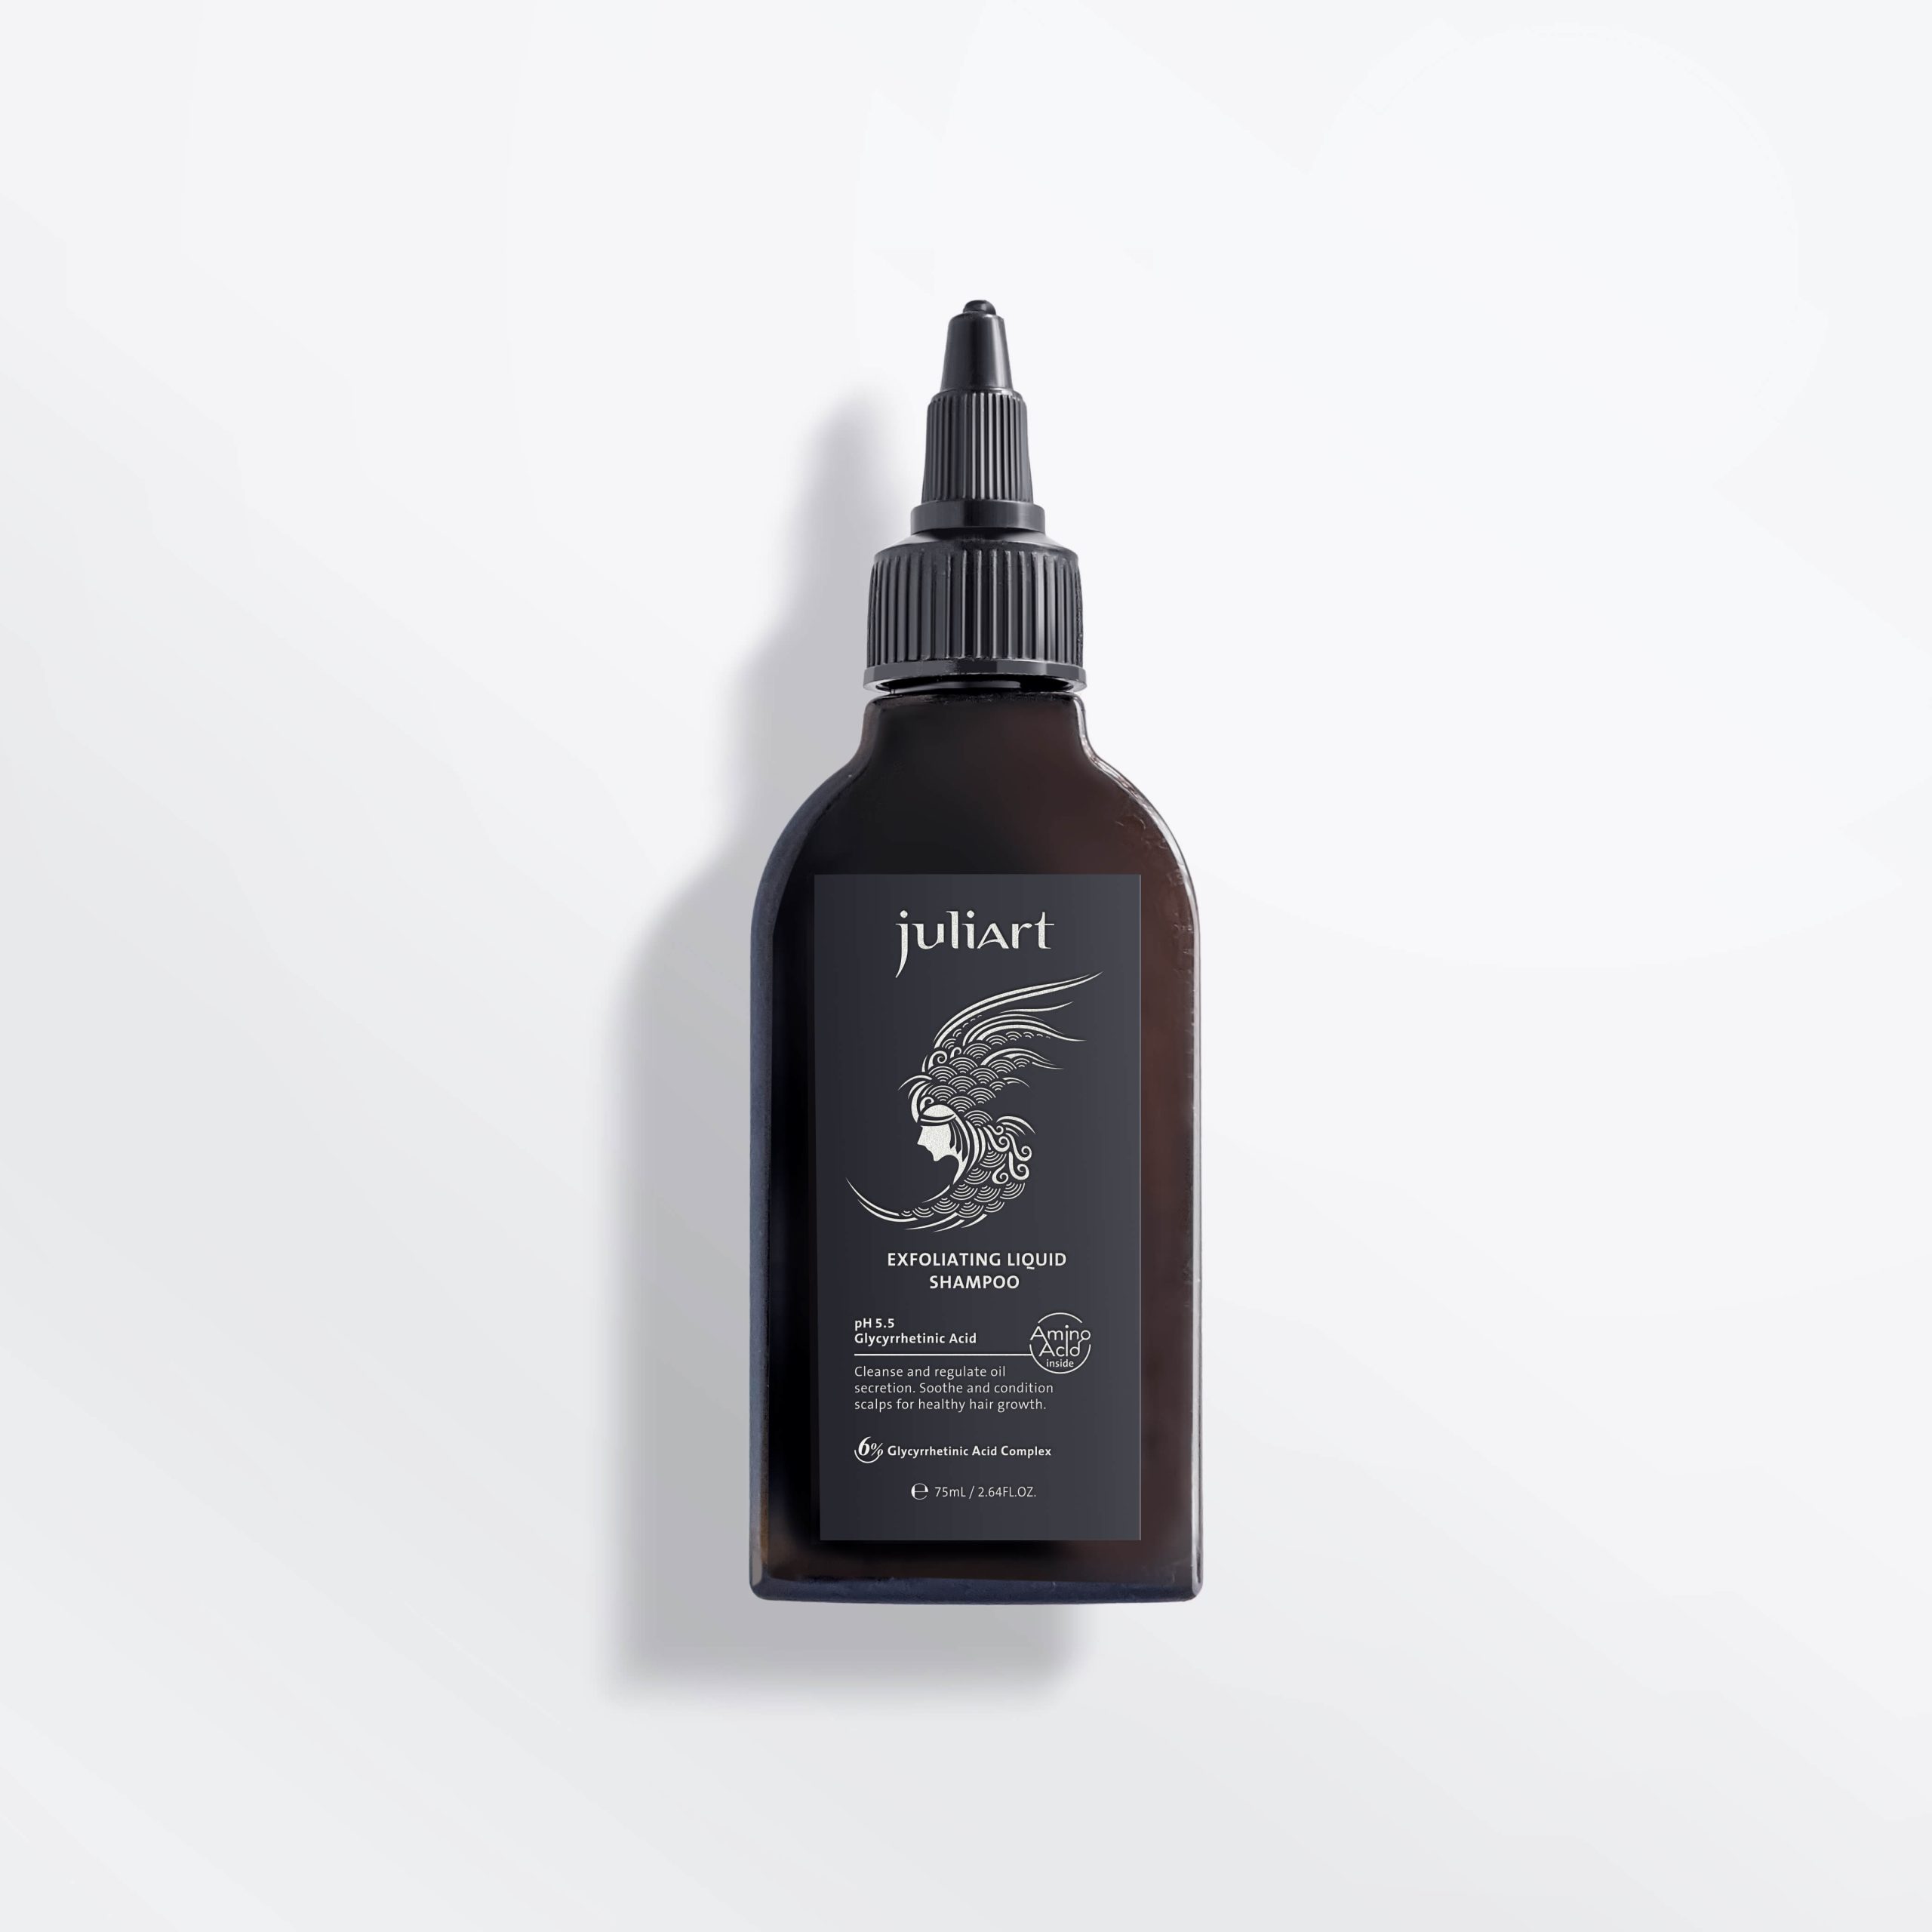 Exfoliating liquid shampoo-75ml-juliart